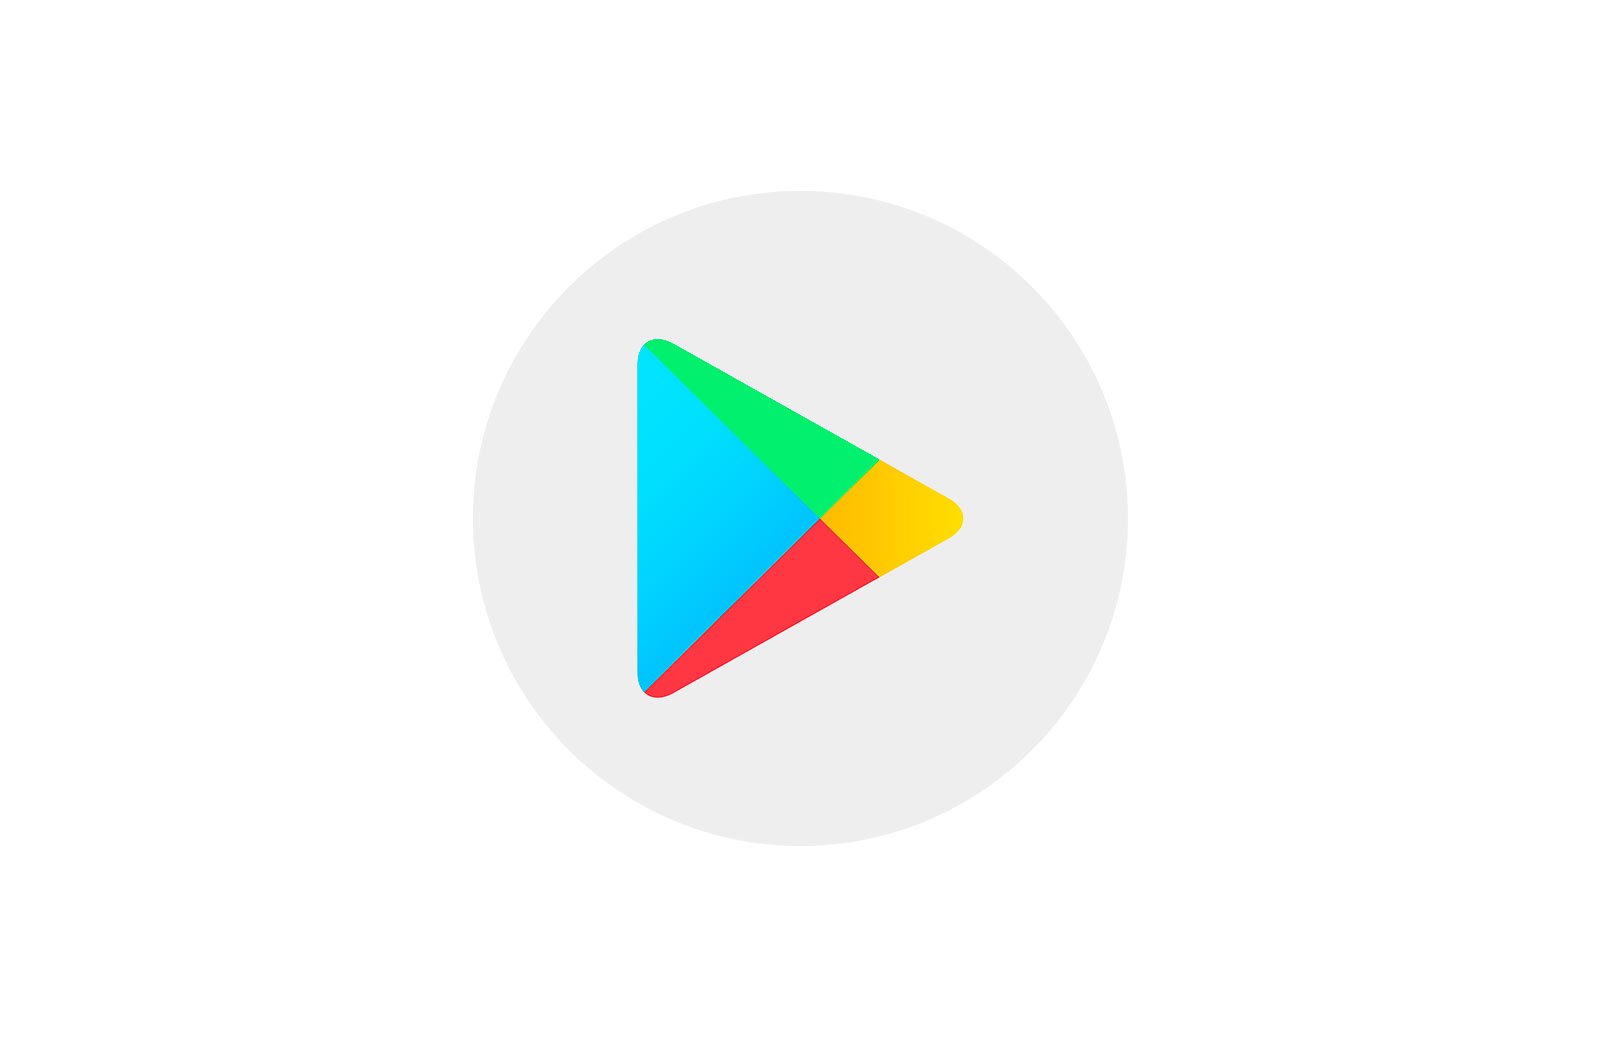 Google Play ծառայությունների հեռացում Meizu բջջային հեռախոսներում